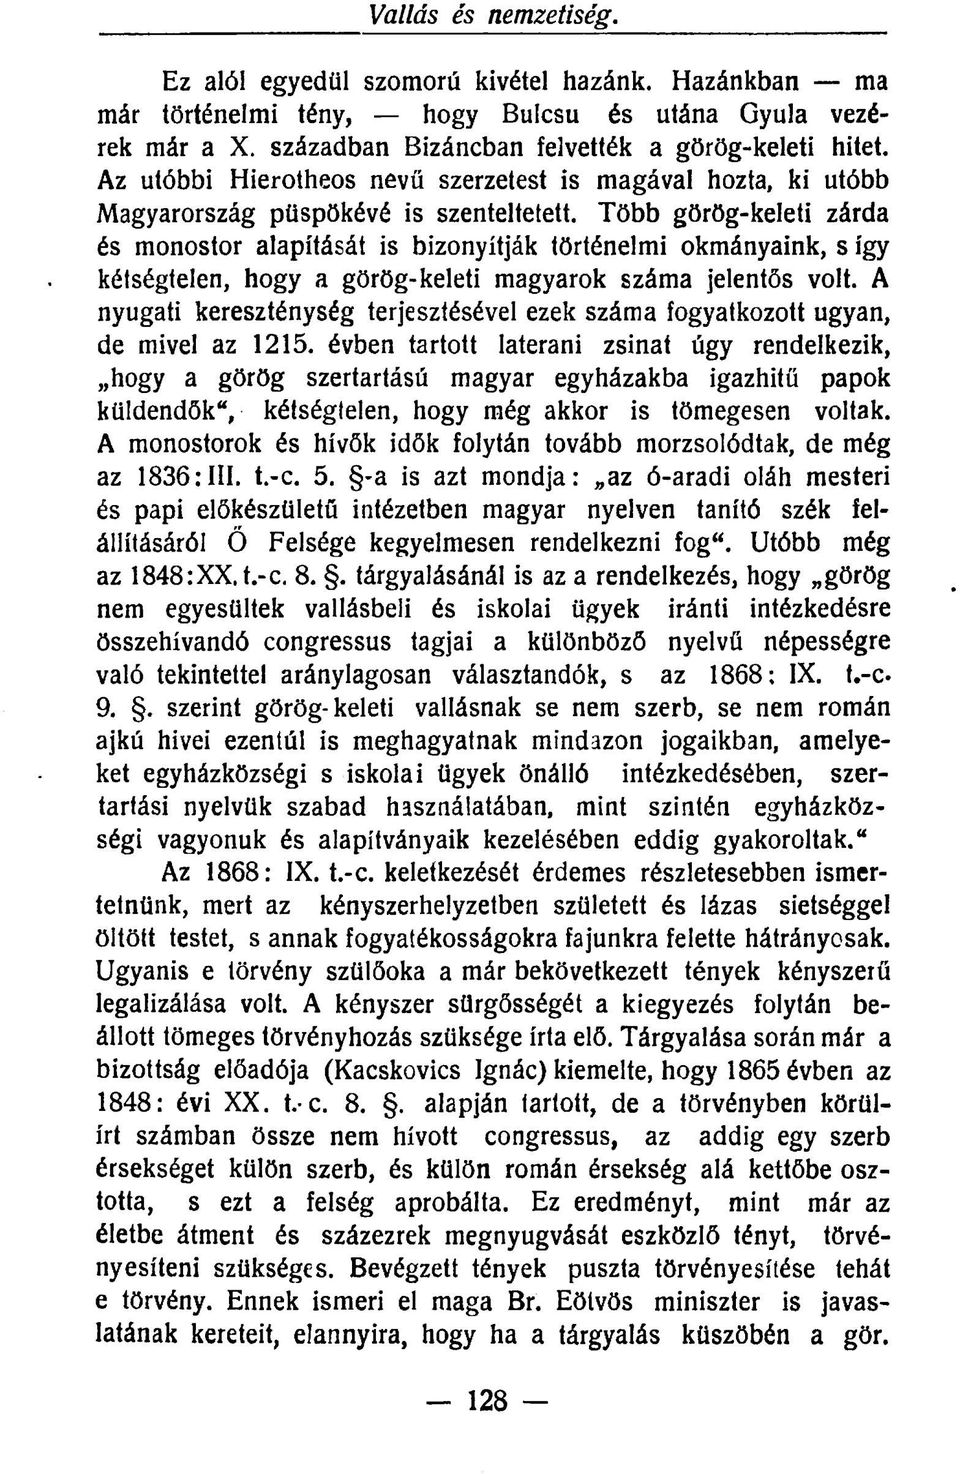 Több görög-keleti zárda és monostor alapítását is bizonyítják történelmi okmányaink, s így kétségtelen, hogy a görög-keleti magyarok száma jelentős volt.